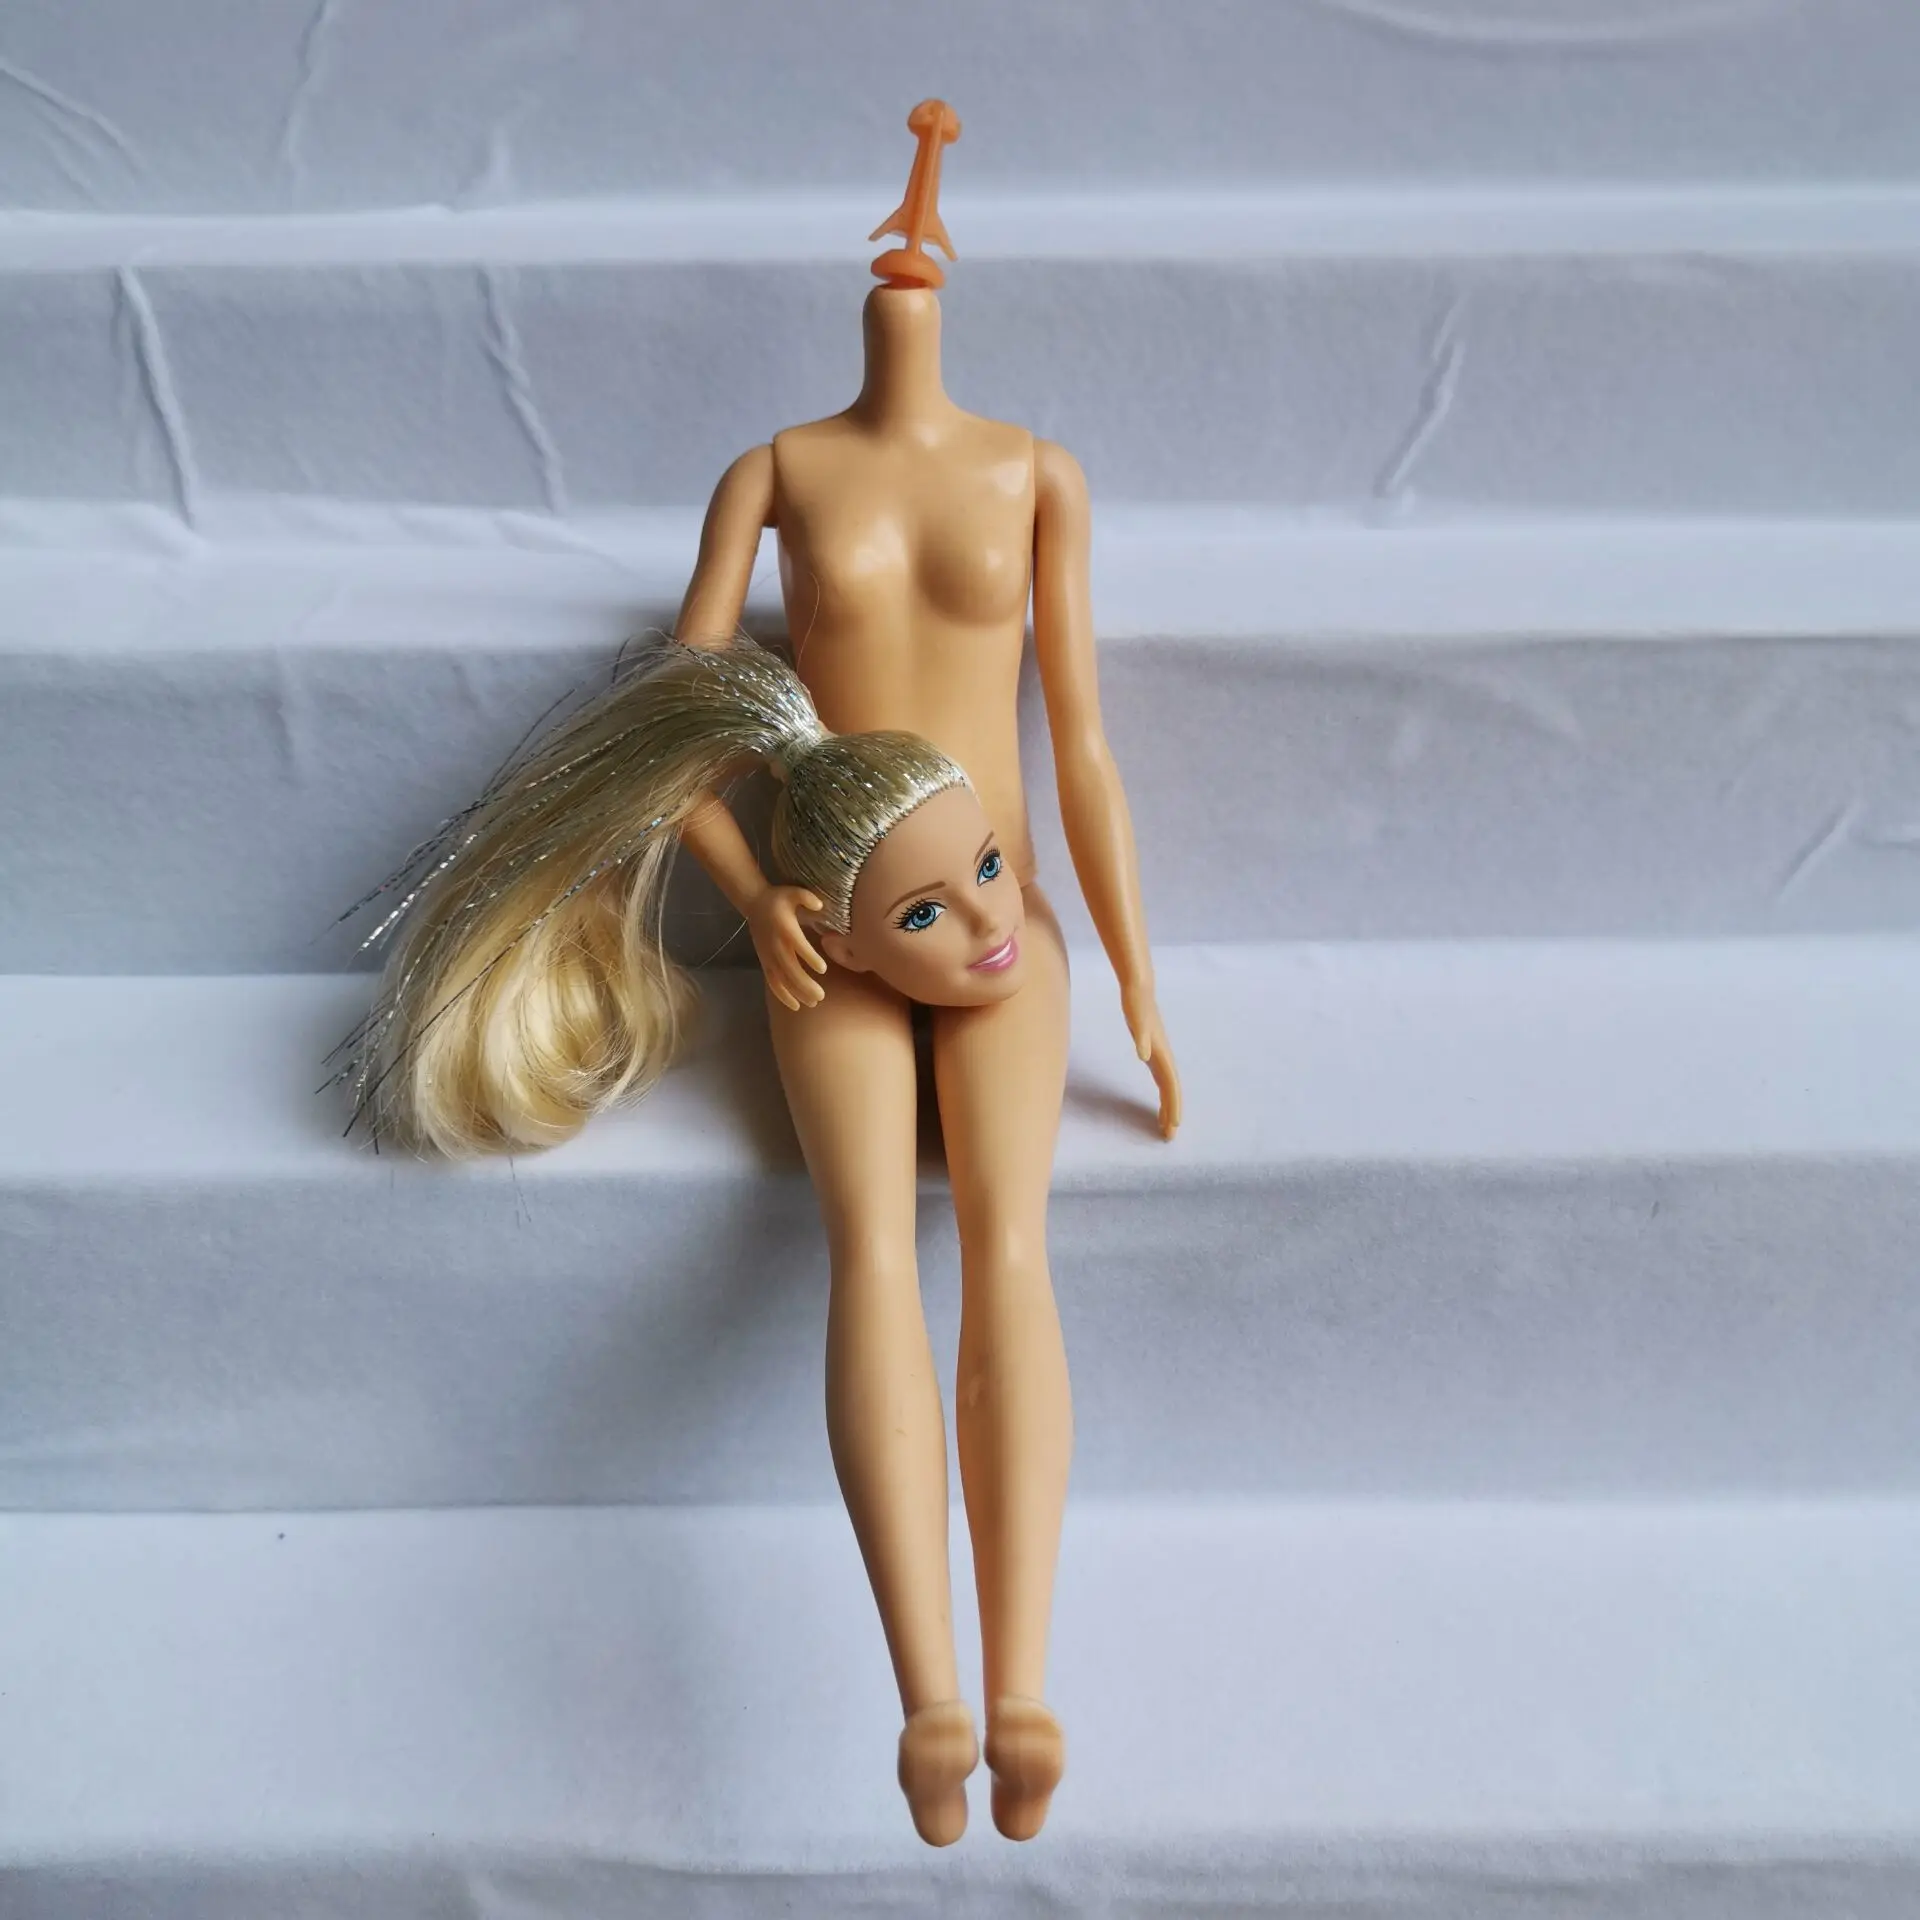 DIY Подвижная кукла аксессуары для тела Кукольный дом для 1/6 BJD Кукла тело детские подарки